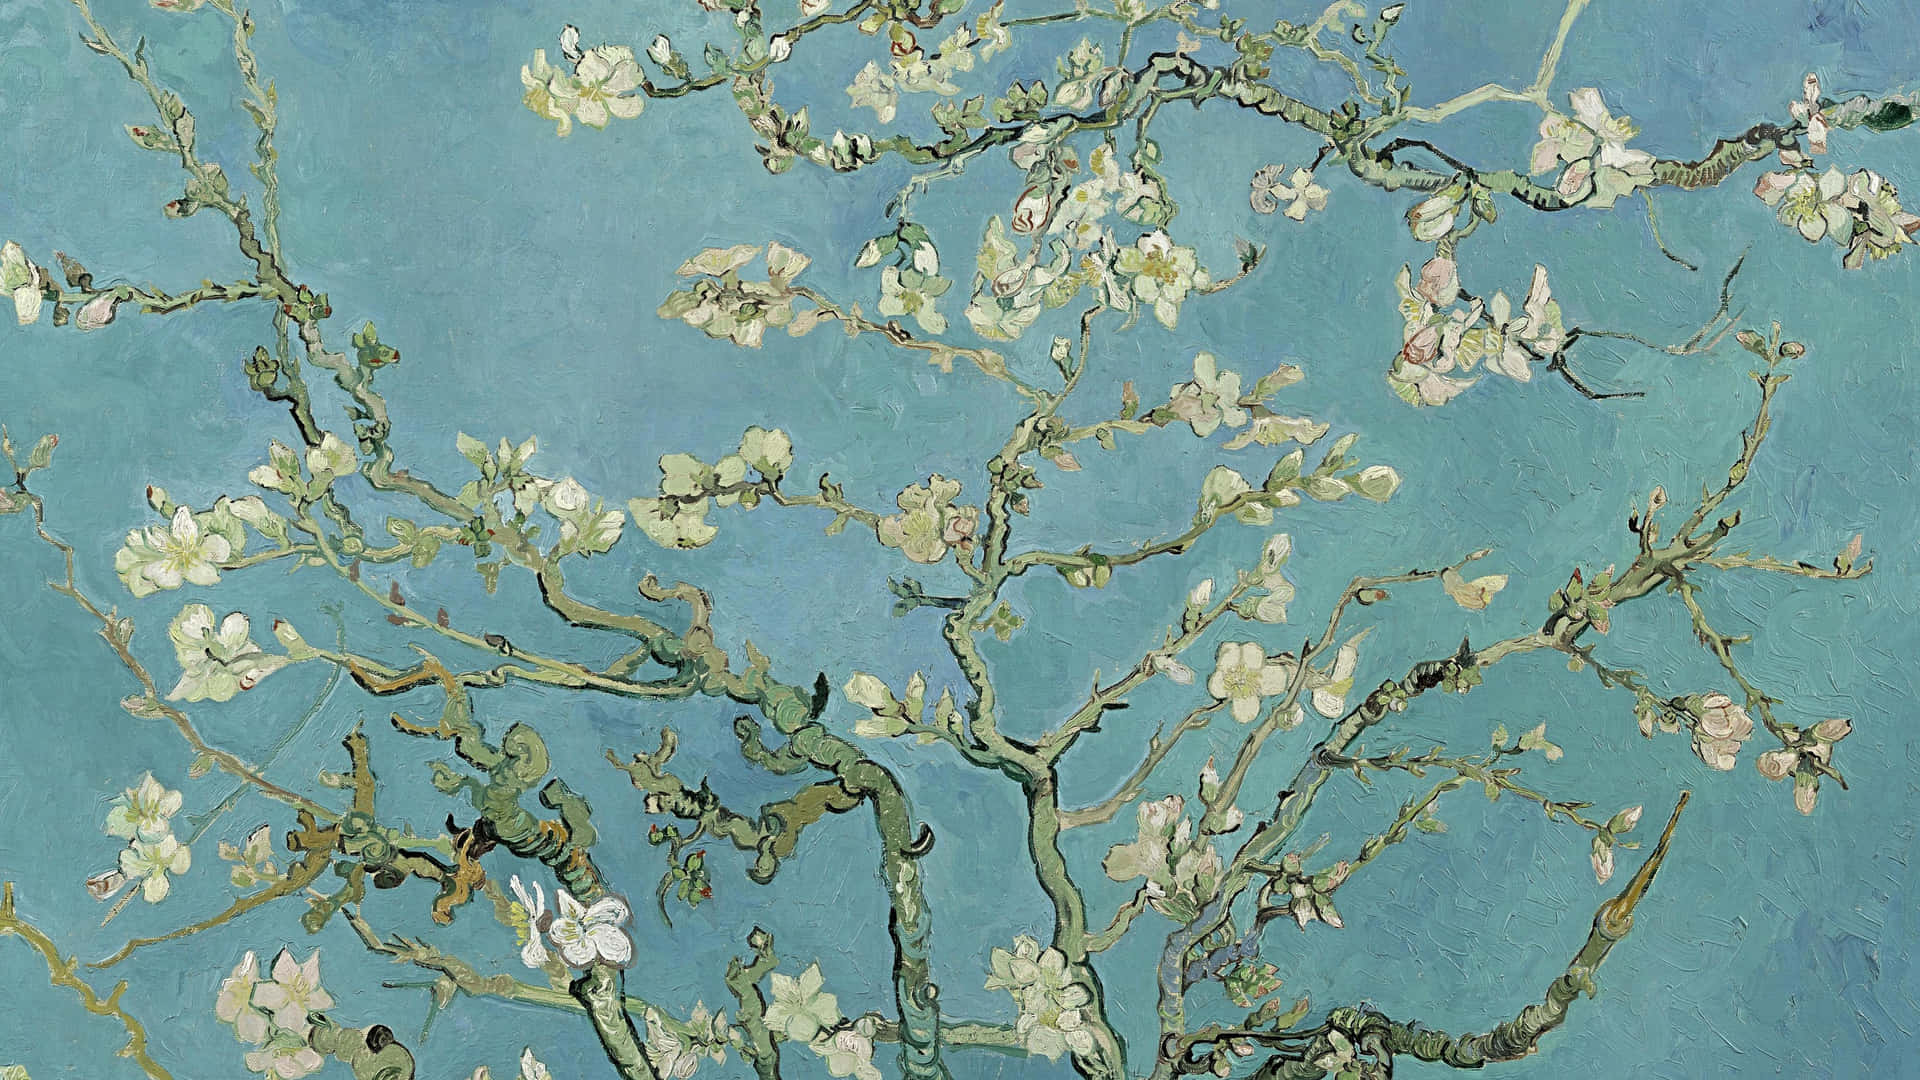 Amandeduftende blomster - Et klassisk maleri af Vincent van Gogh pryder denne fantastiske tapet. Wallpaper